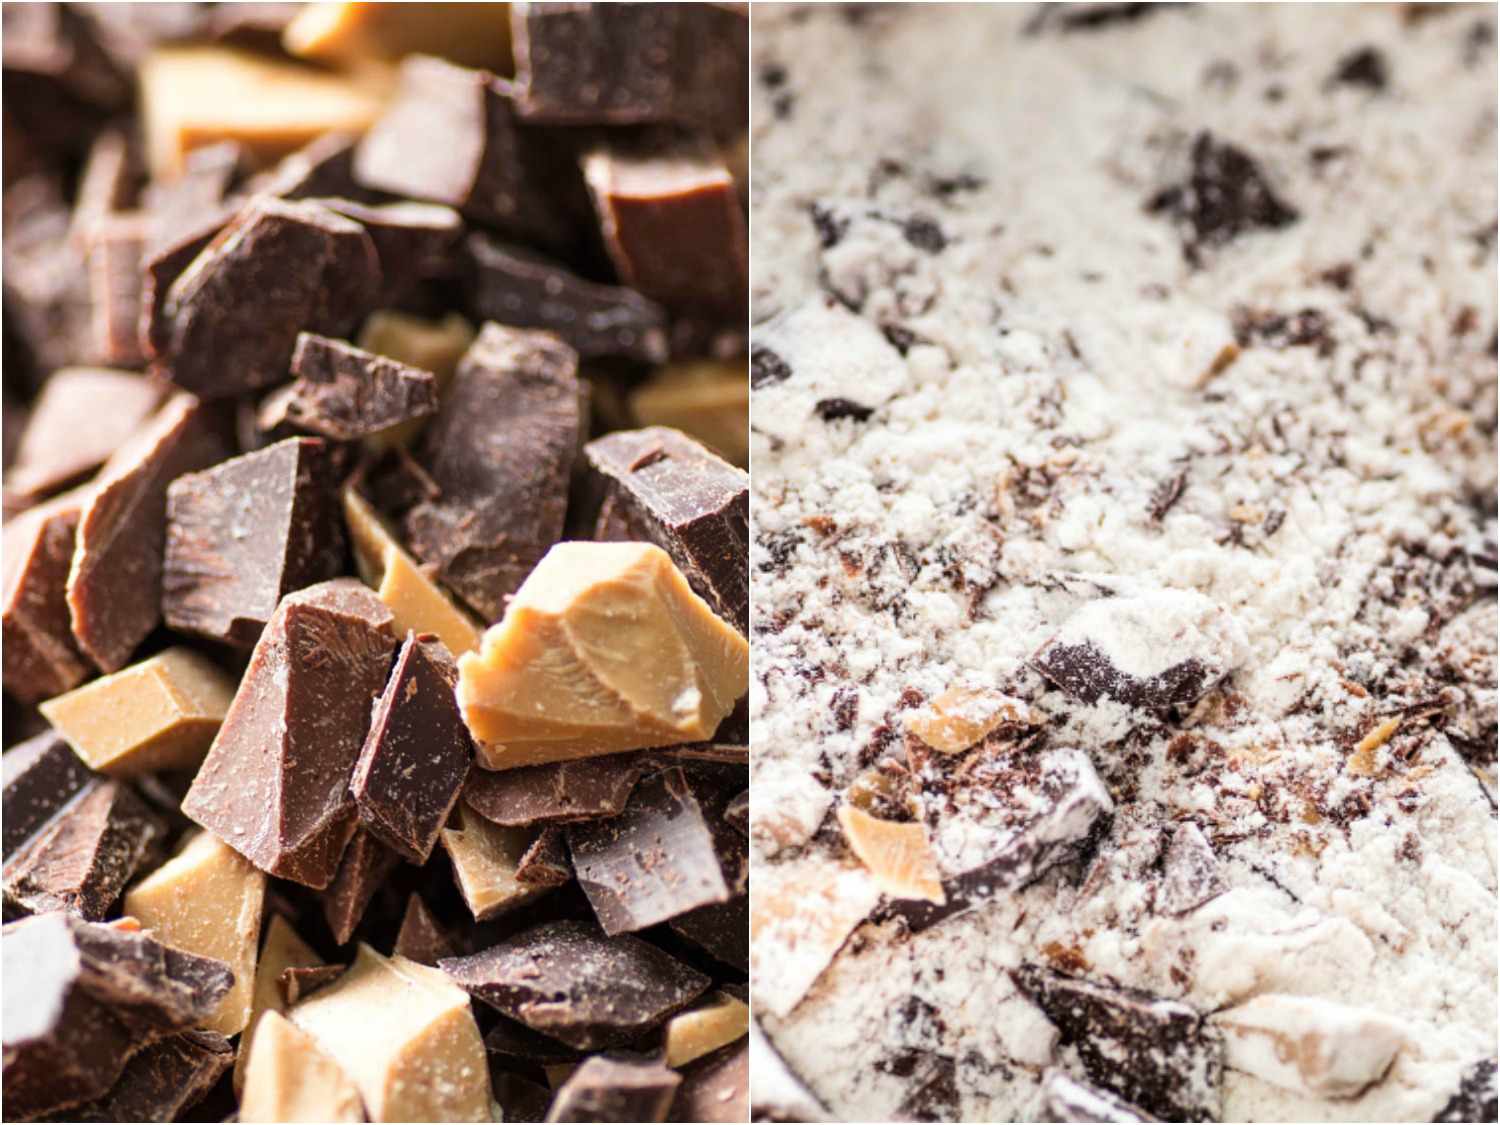 在巧克力里用巧克力和巧克力碎片制成的粉末，用巧克力蛋糕制成的粉末